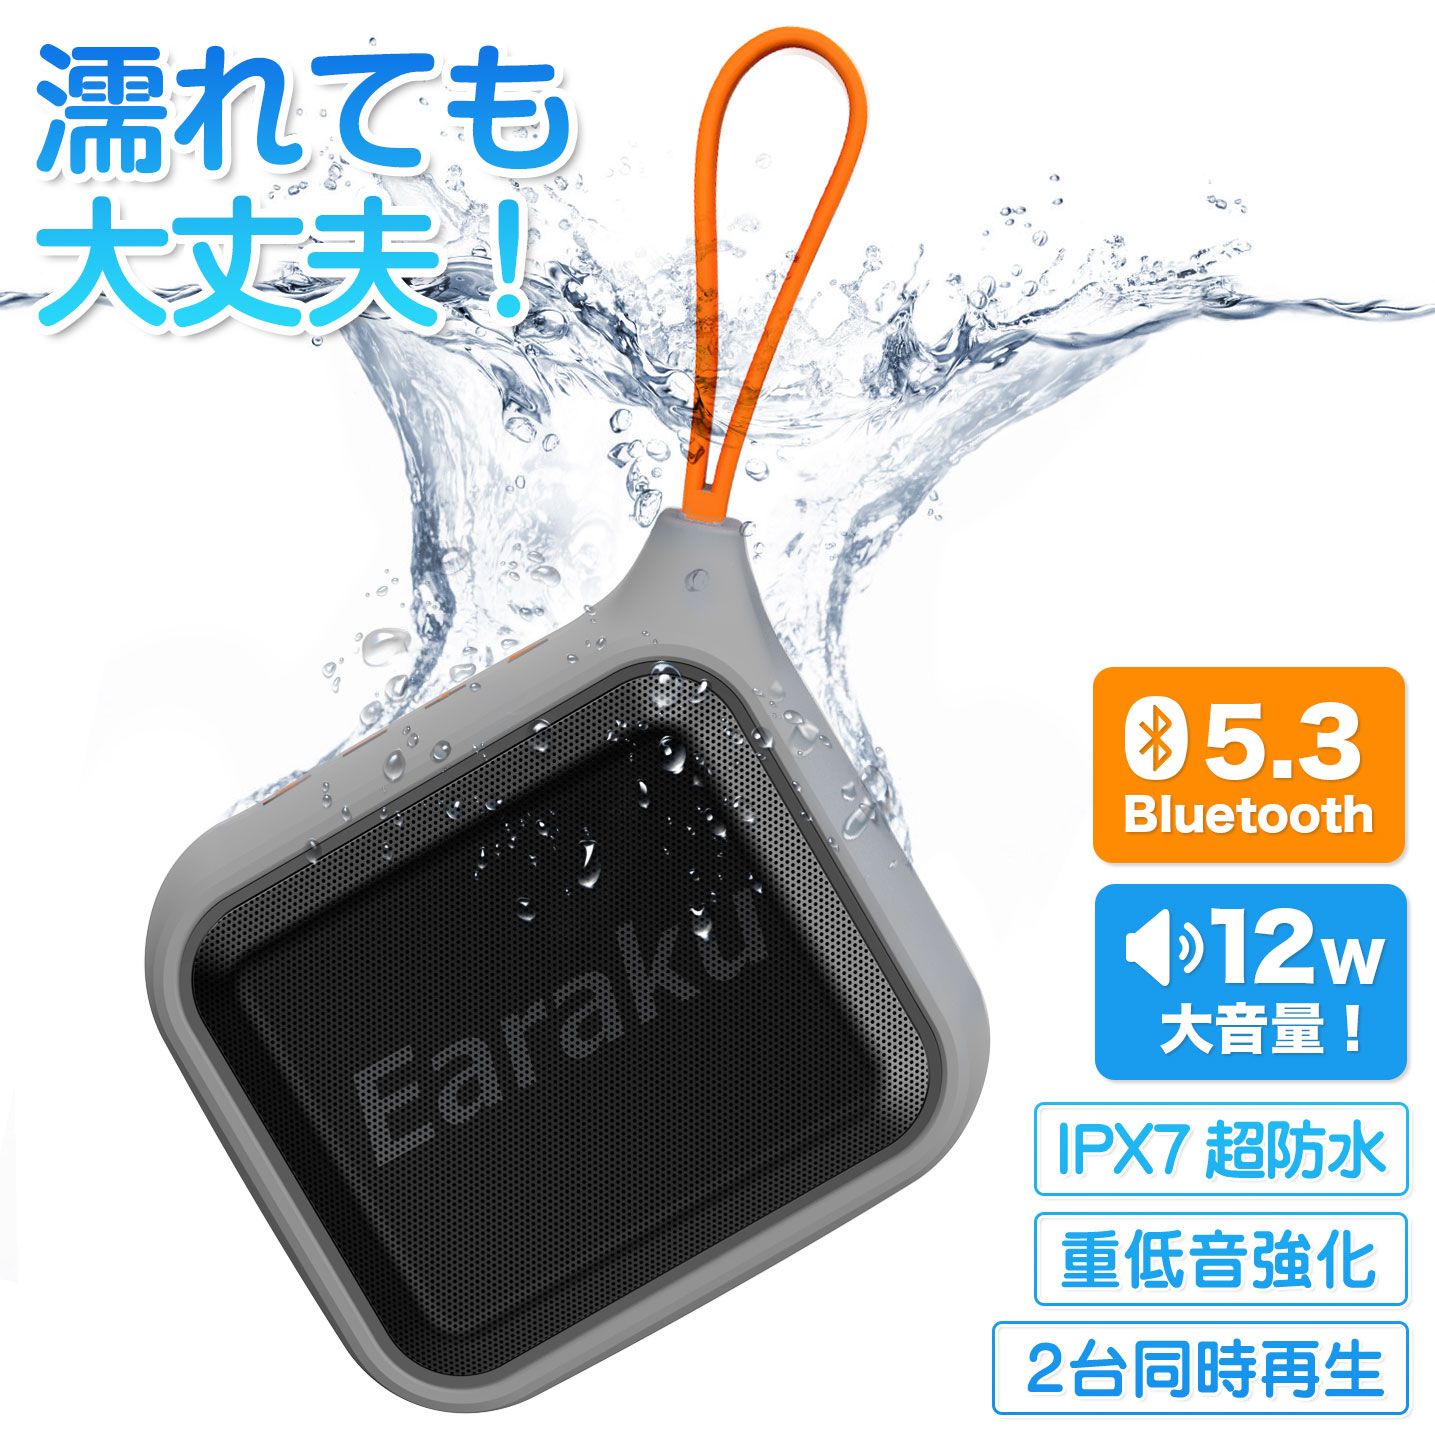 新発売 超防水 bluetooth スピーカー ワイヤレス 防水 スピーカー ブルートゥース ポータブル スピーカー 小型 Bluetoothスピーカー ポータブルスピーカー